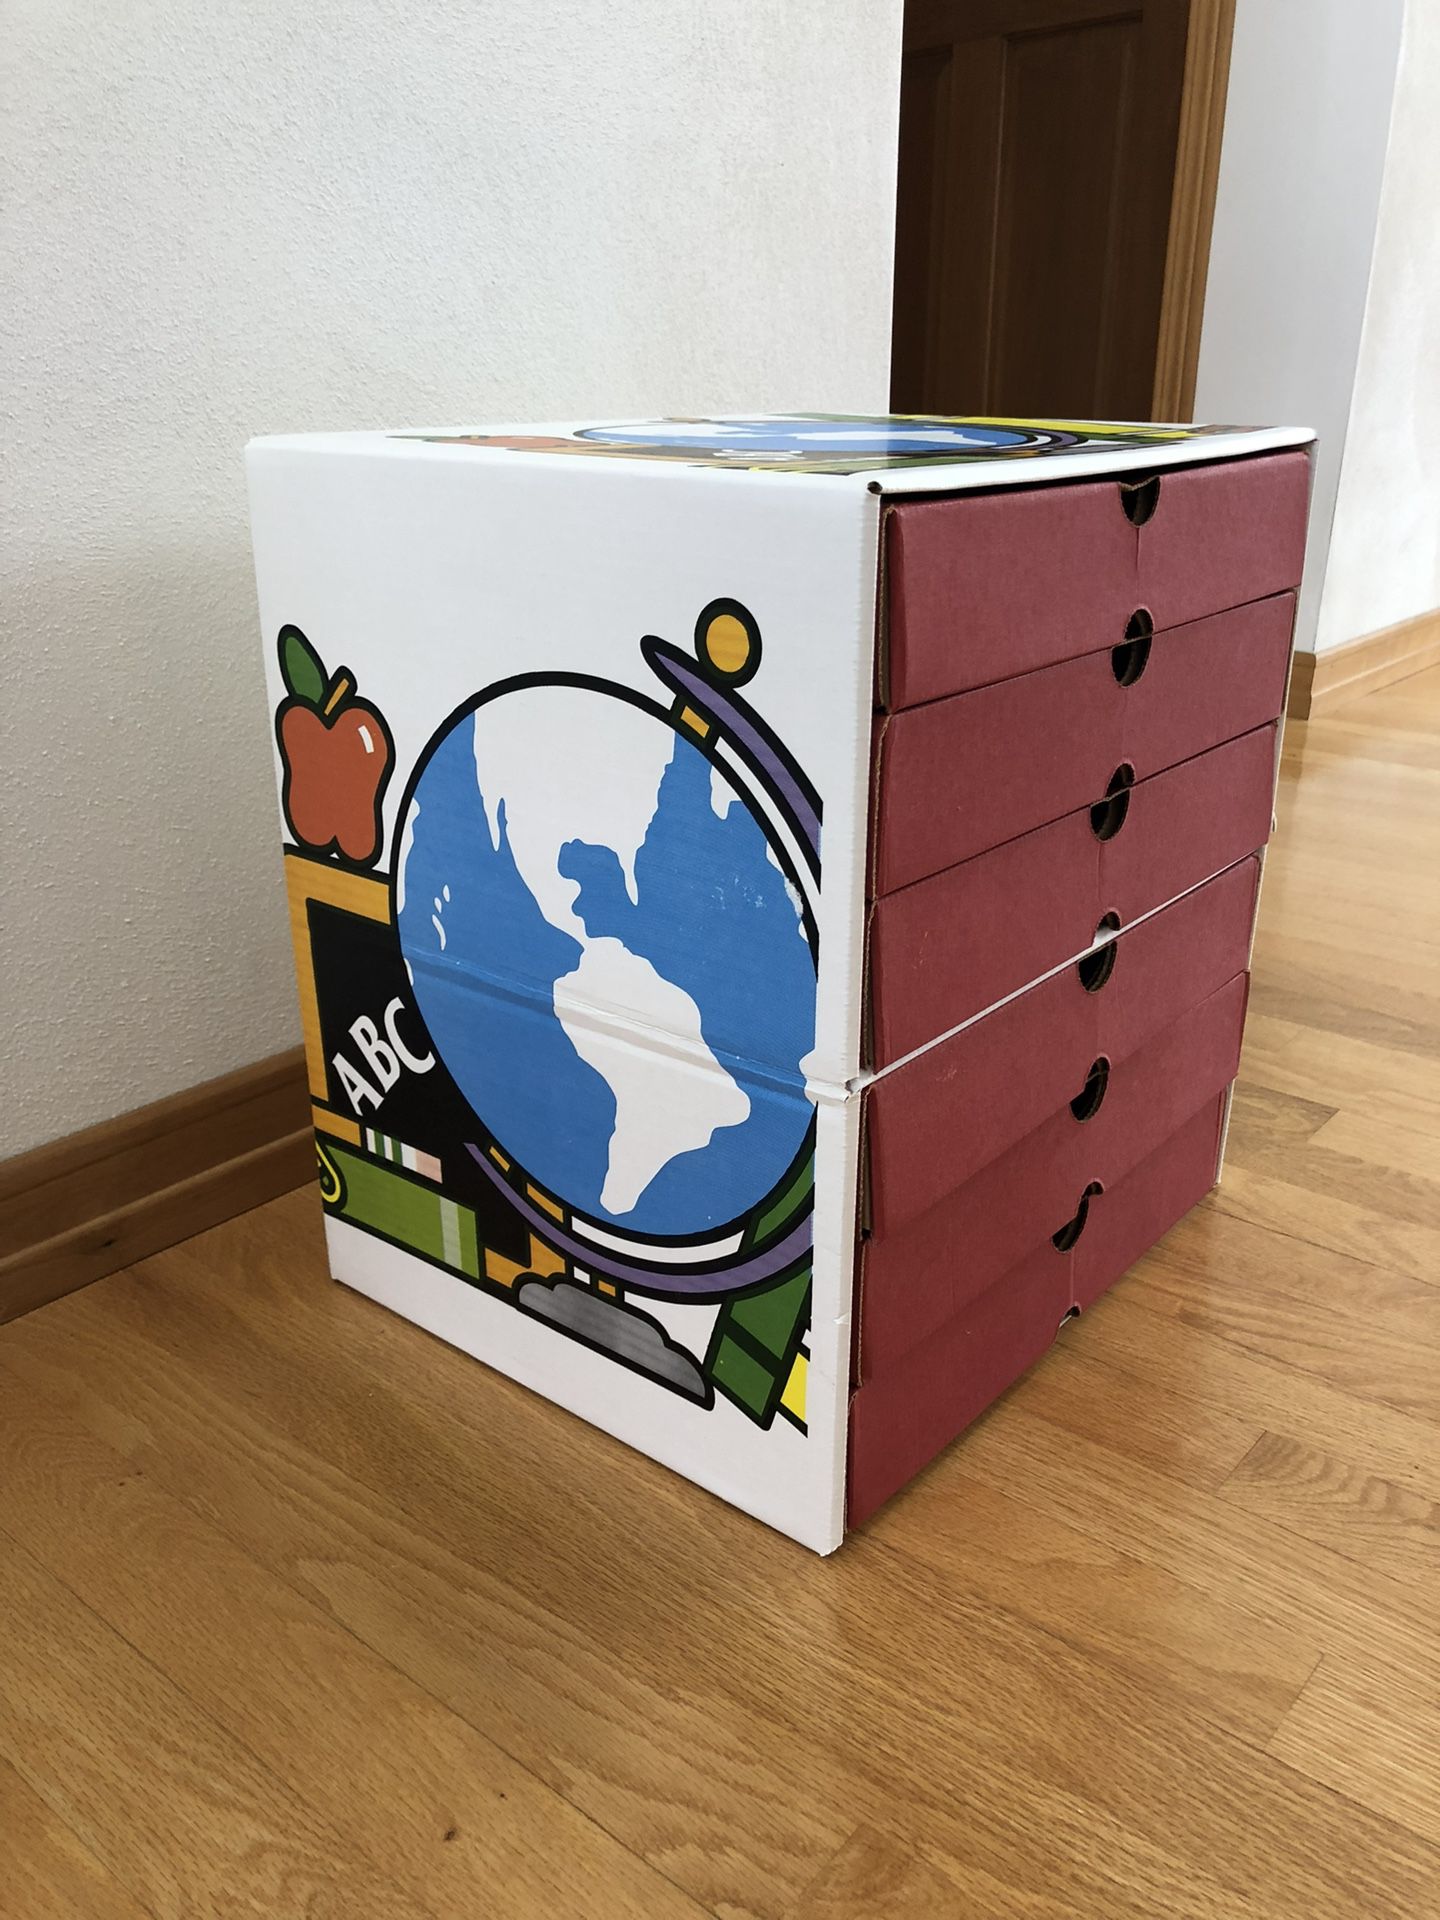 Cardboard School Memories Keeper Box